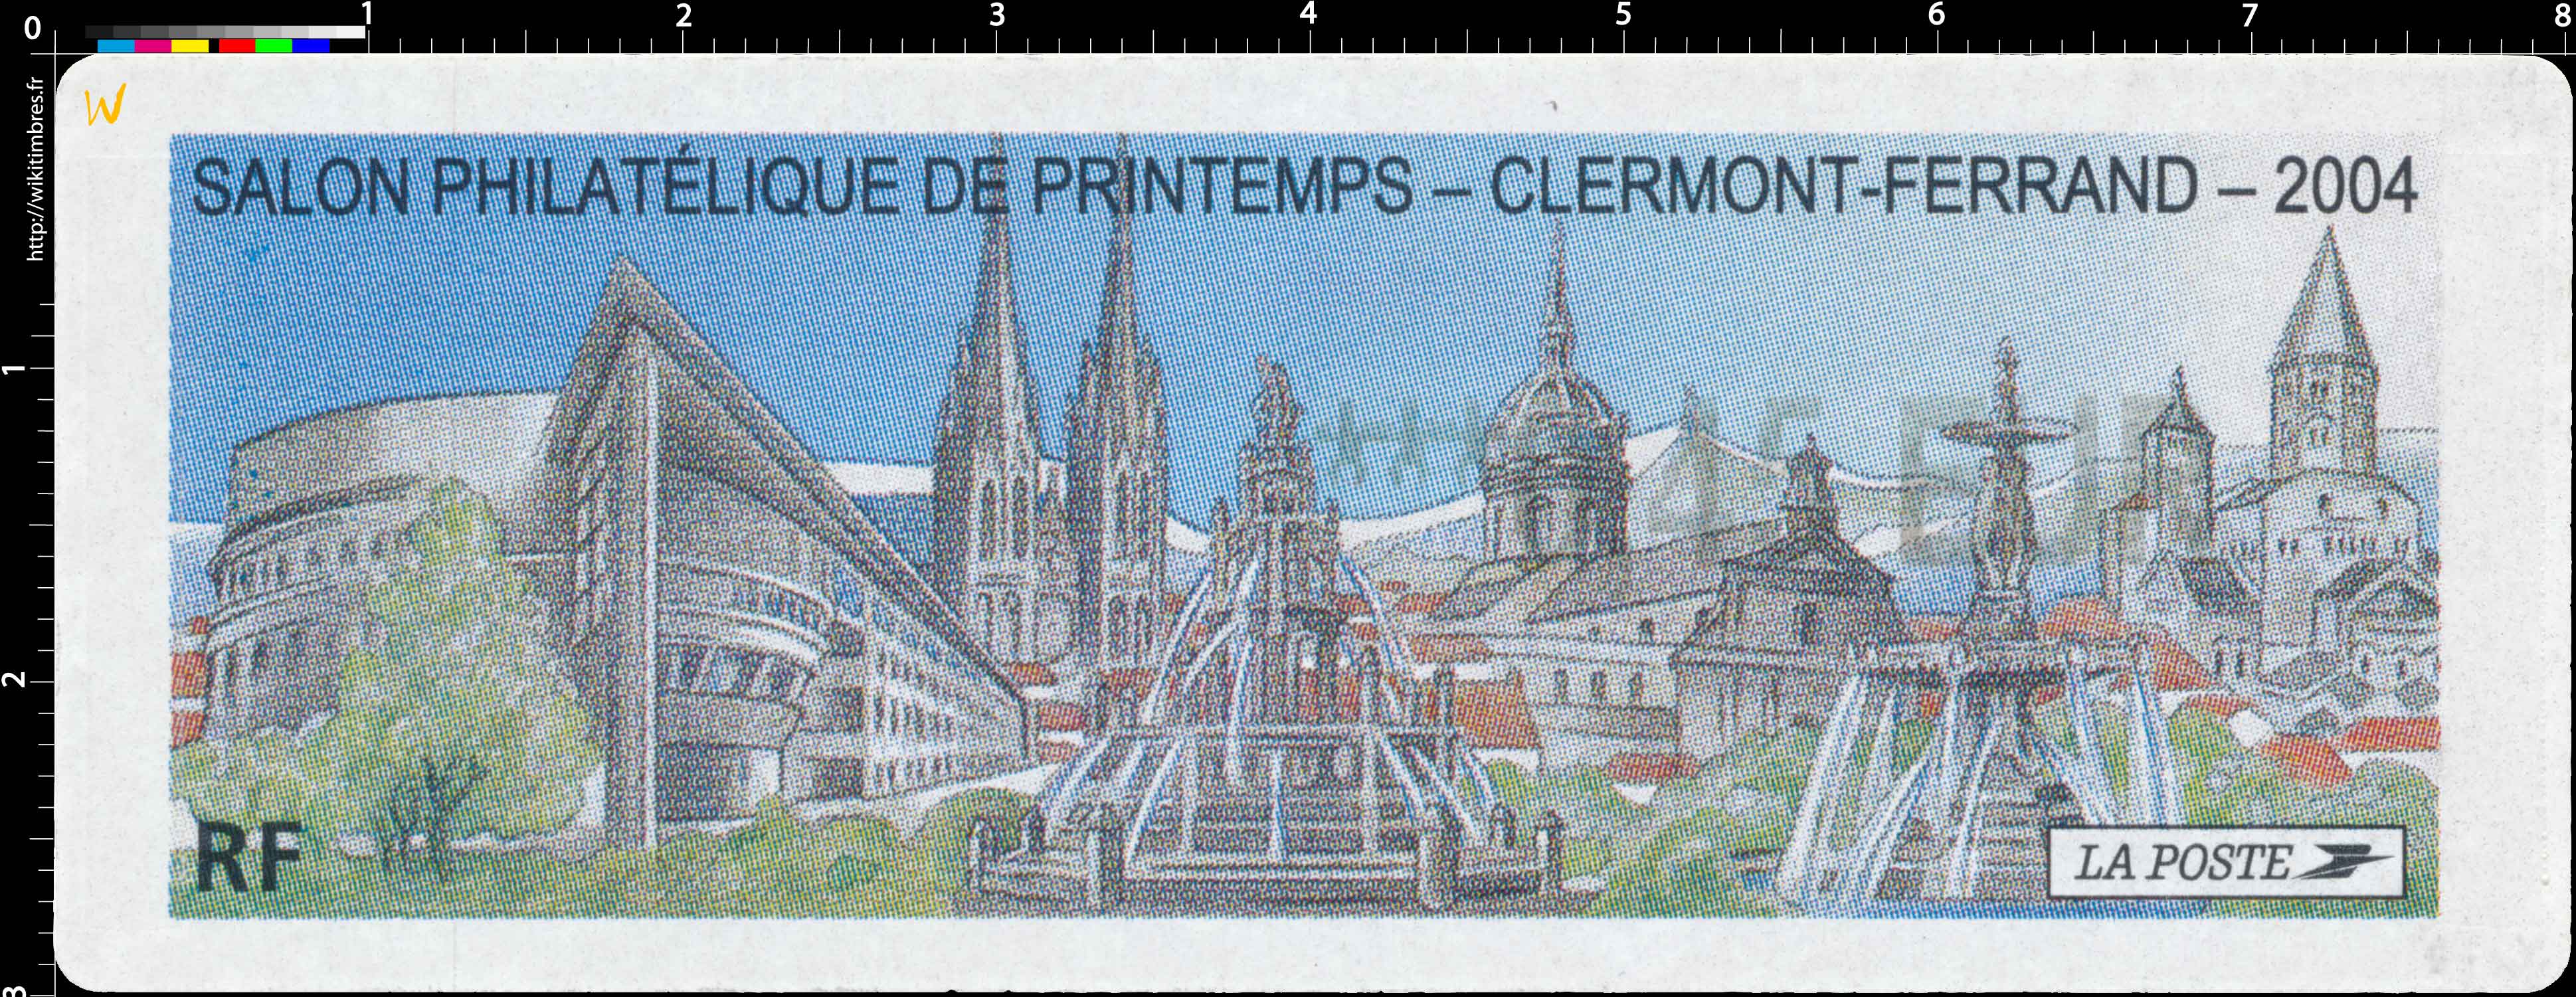 2004 SALON PHILATÉLIQUE DE PRINTEMPS - CLERMONT-FERRAND